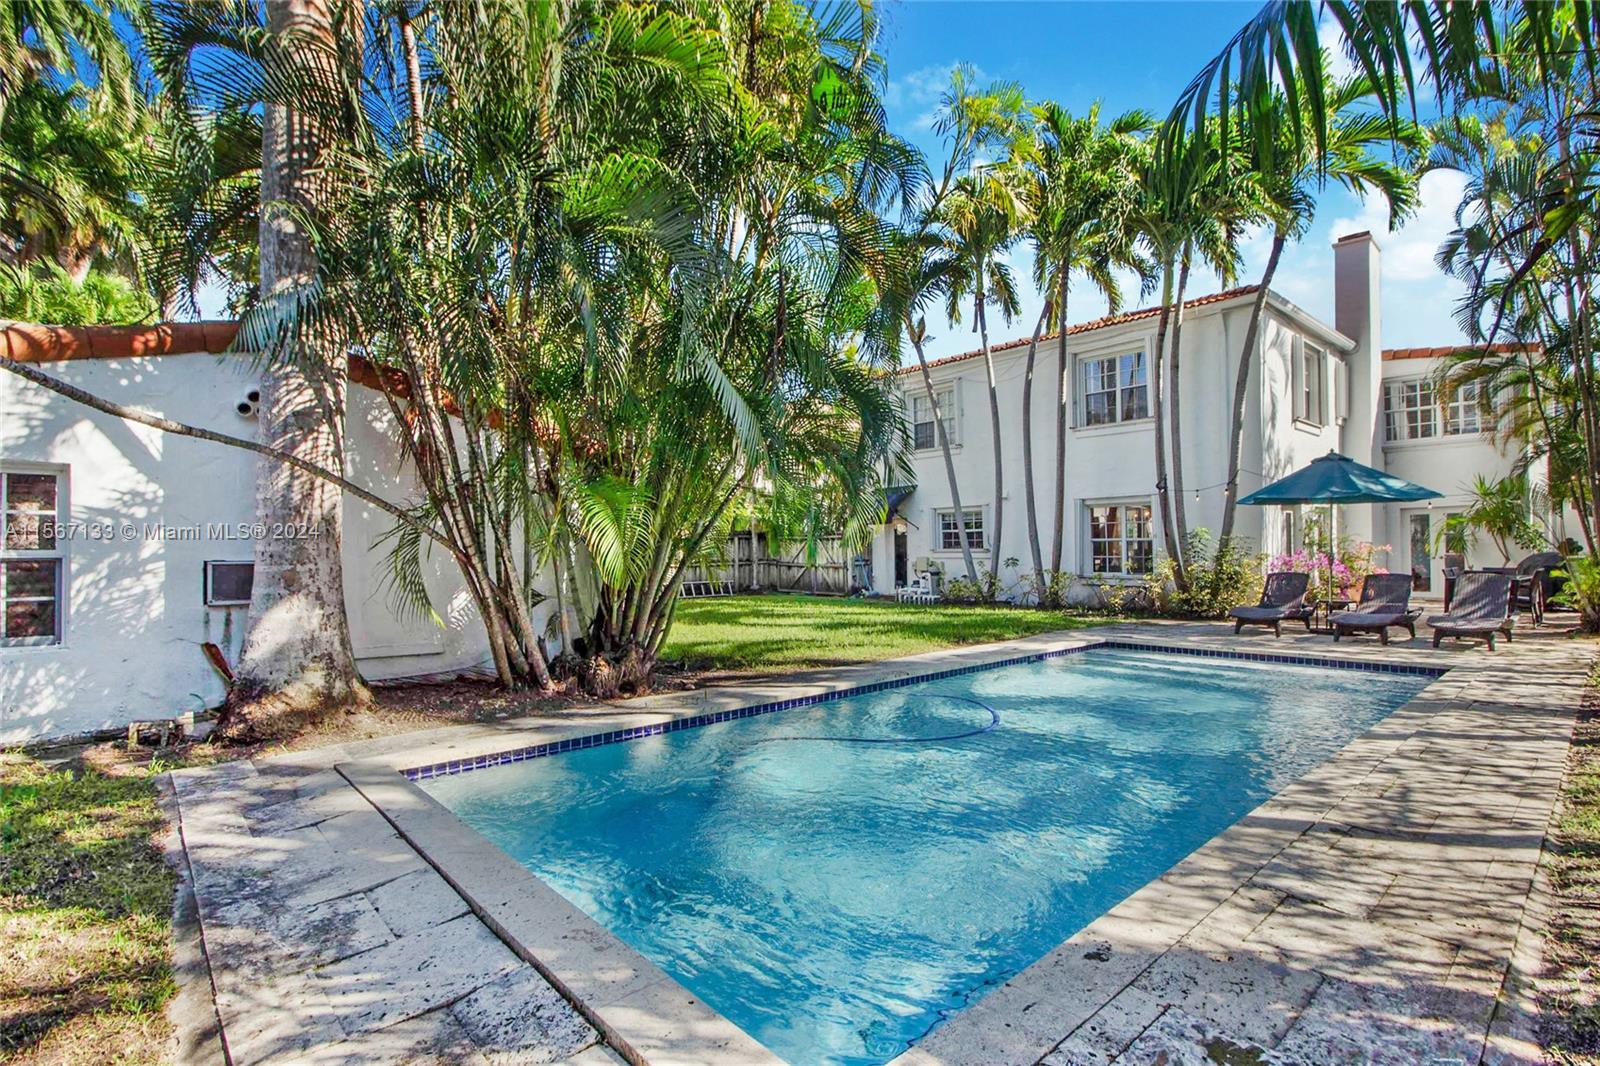 Property for Sale at 5832 Alton Rd, Miami Beach, Miami-Dade County, Florida - Bedrooms: 4 
Bathrooms: 5  - $1,895,000